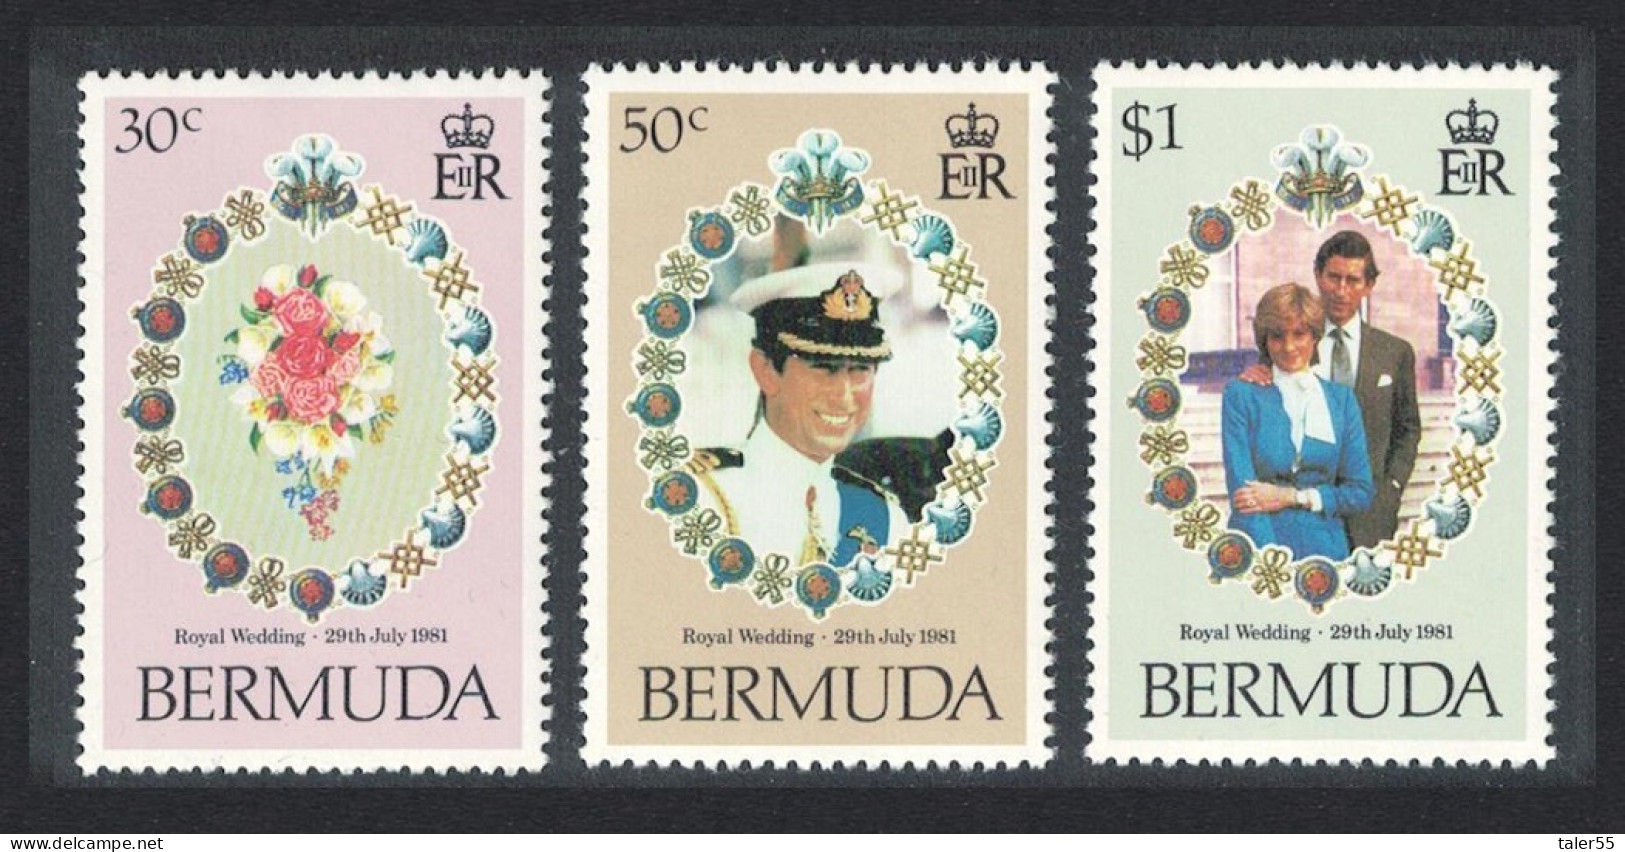 Bermuda Charles And Diana Royal Wedding 3v 1981 MNH SG#436-438 - Bermuda